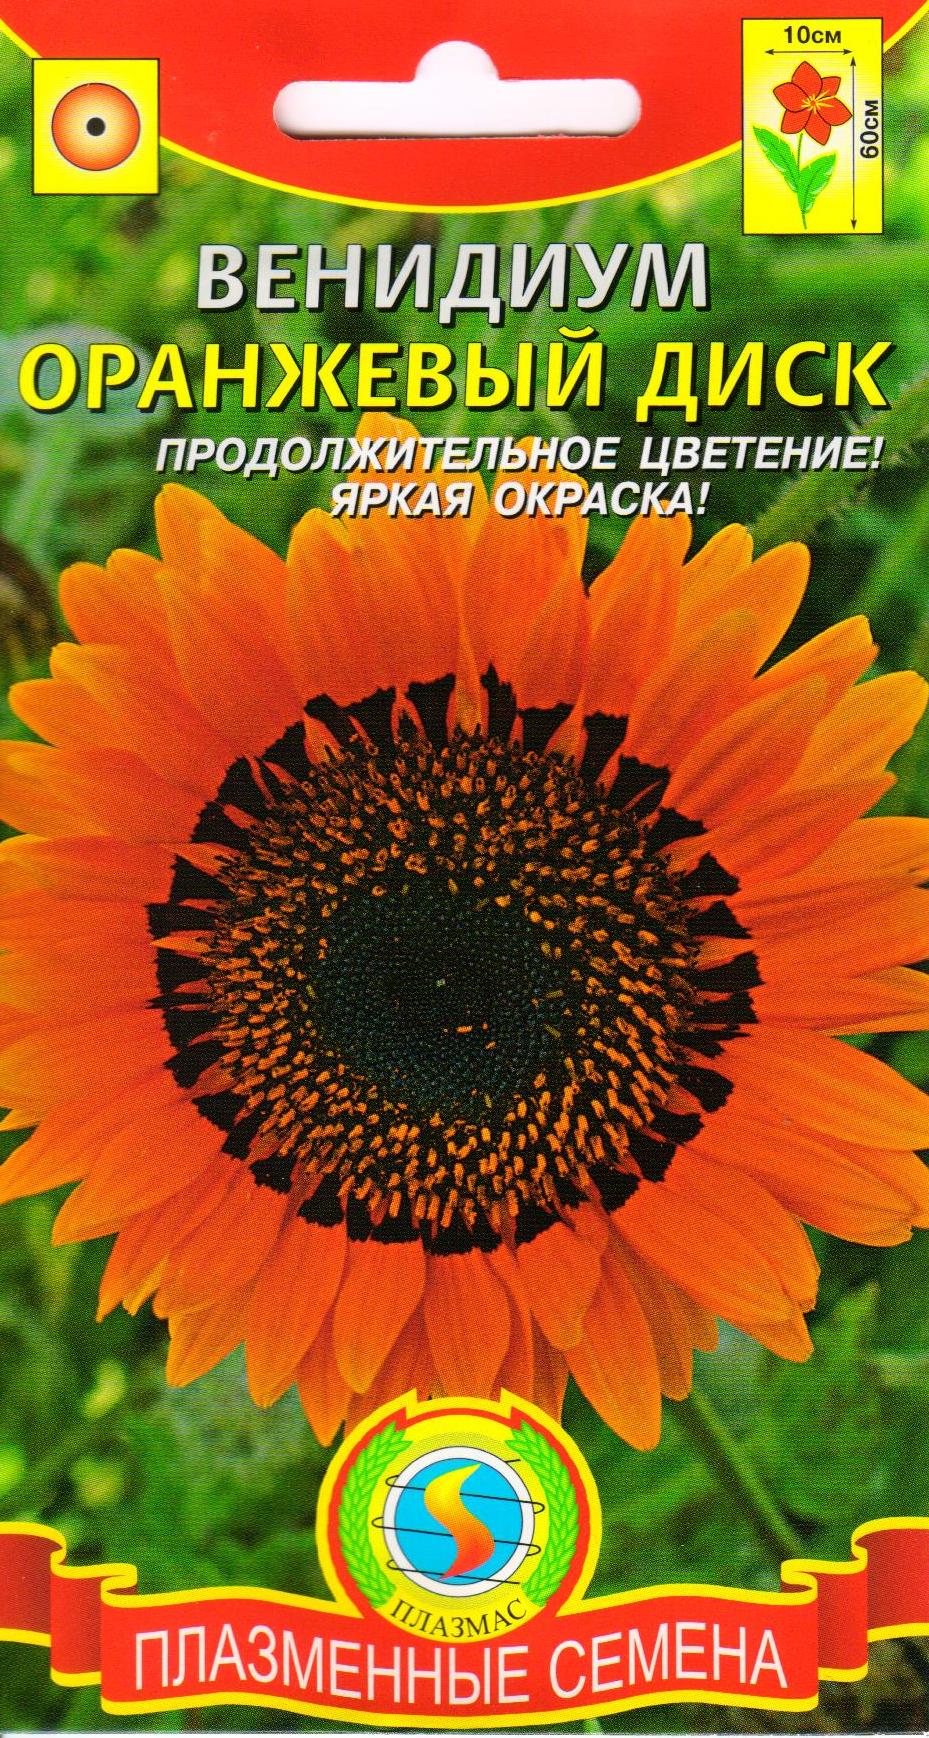 цветок венидиум фото посадка